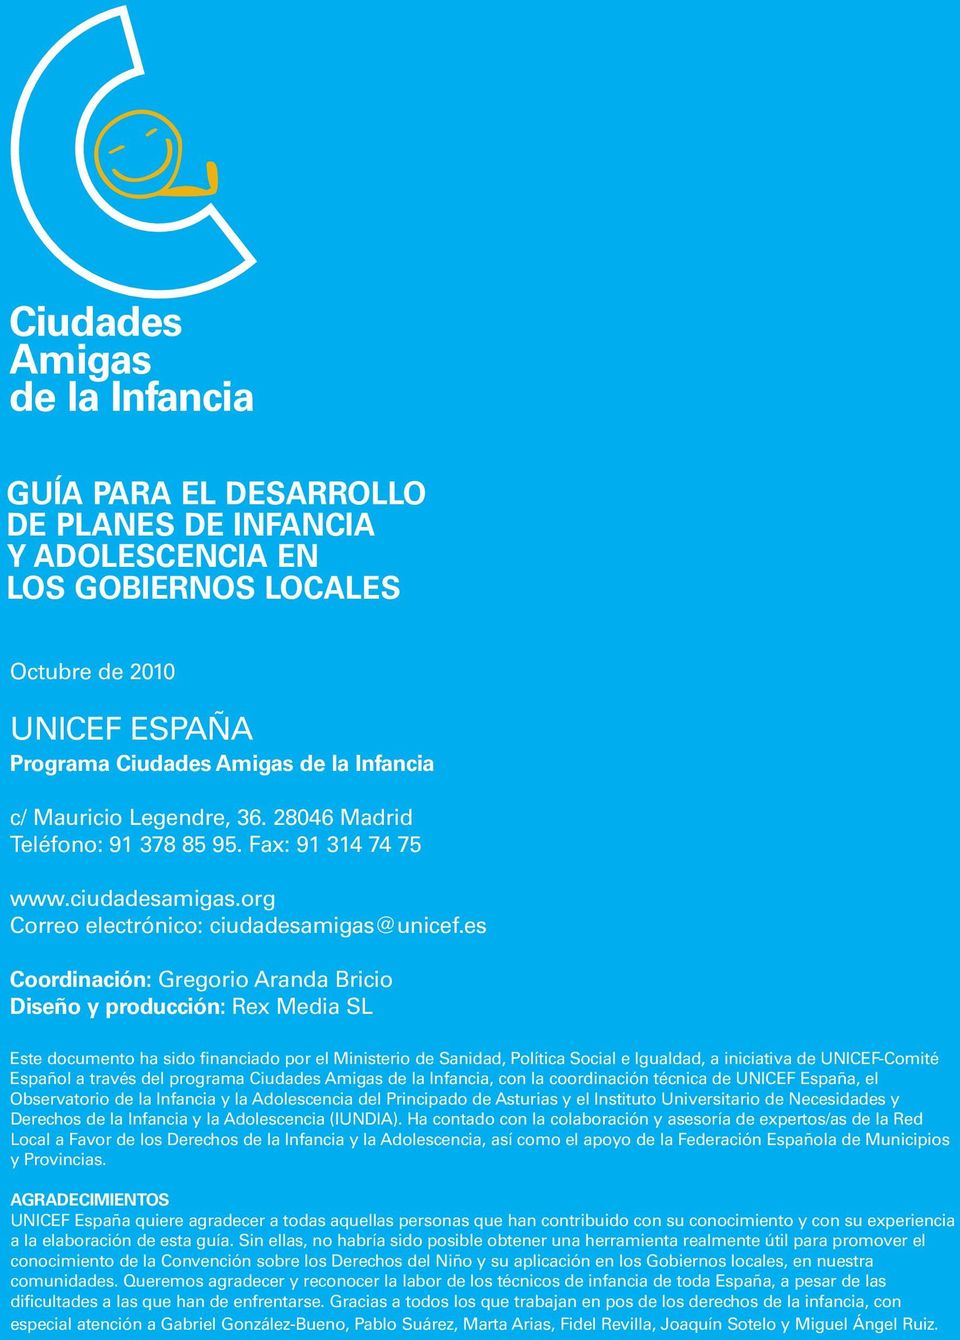 es Coordinación: Gregorio Aranda Bricio Diseño y producción: Rex Media SL Este documento ha sido financiado por el Ministerio de Sanidad, Política Social e Igualdad, a iniciativa de UNICEF-Comité